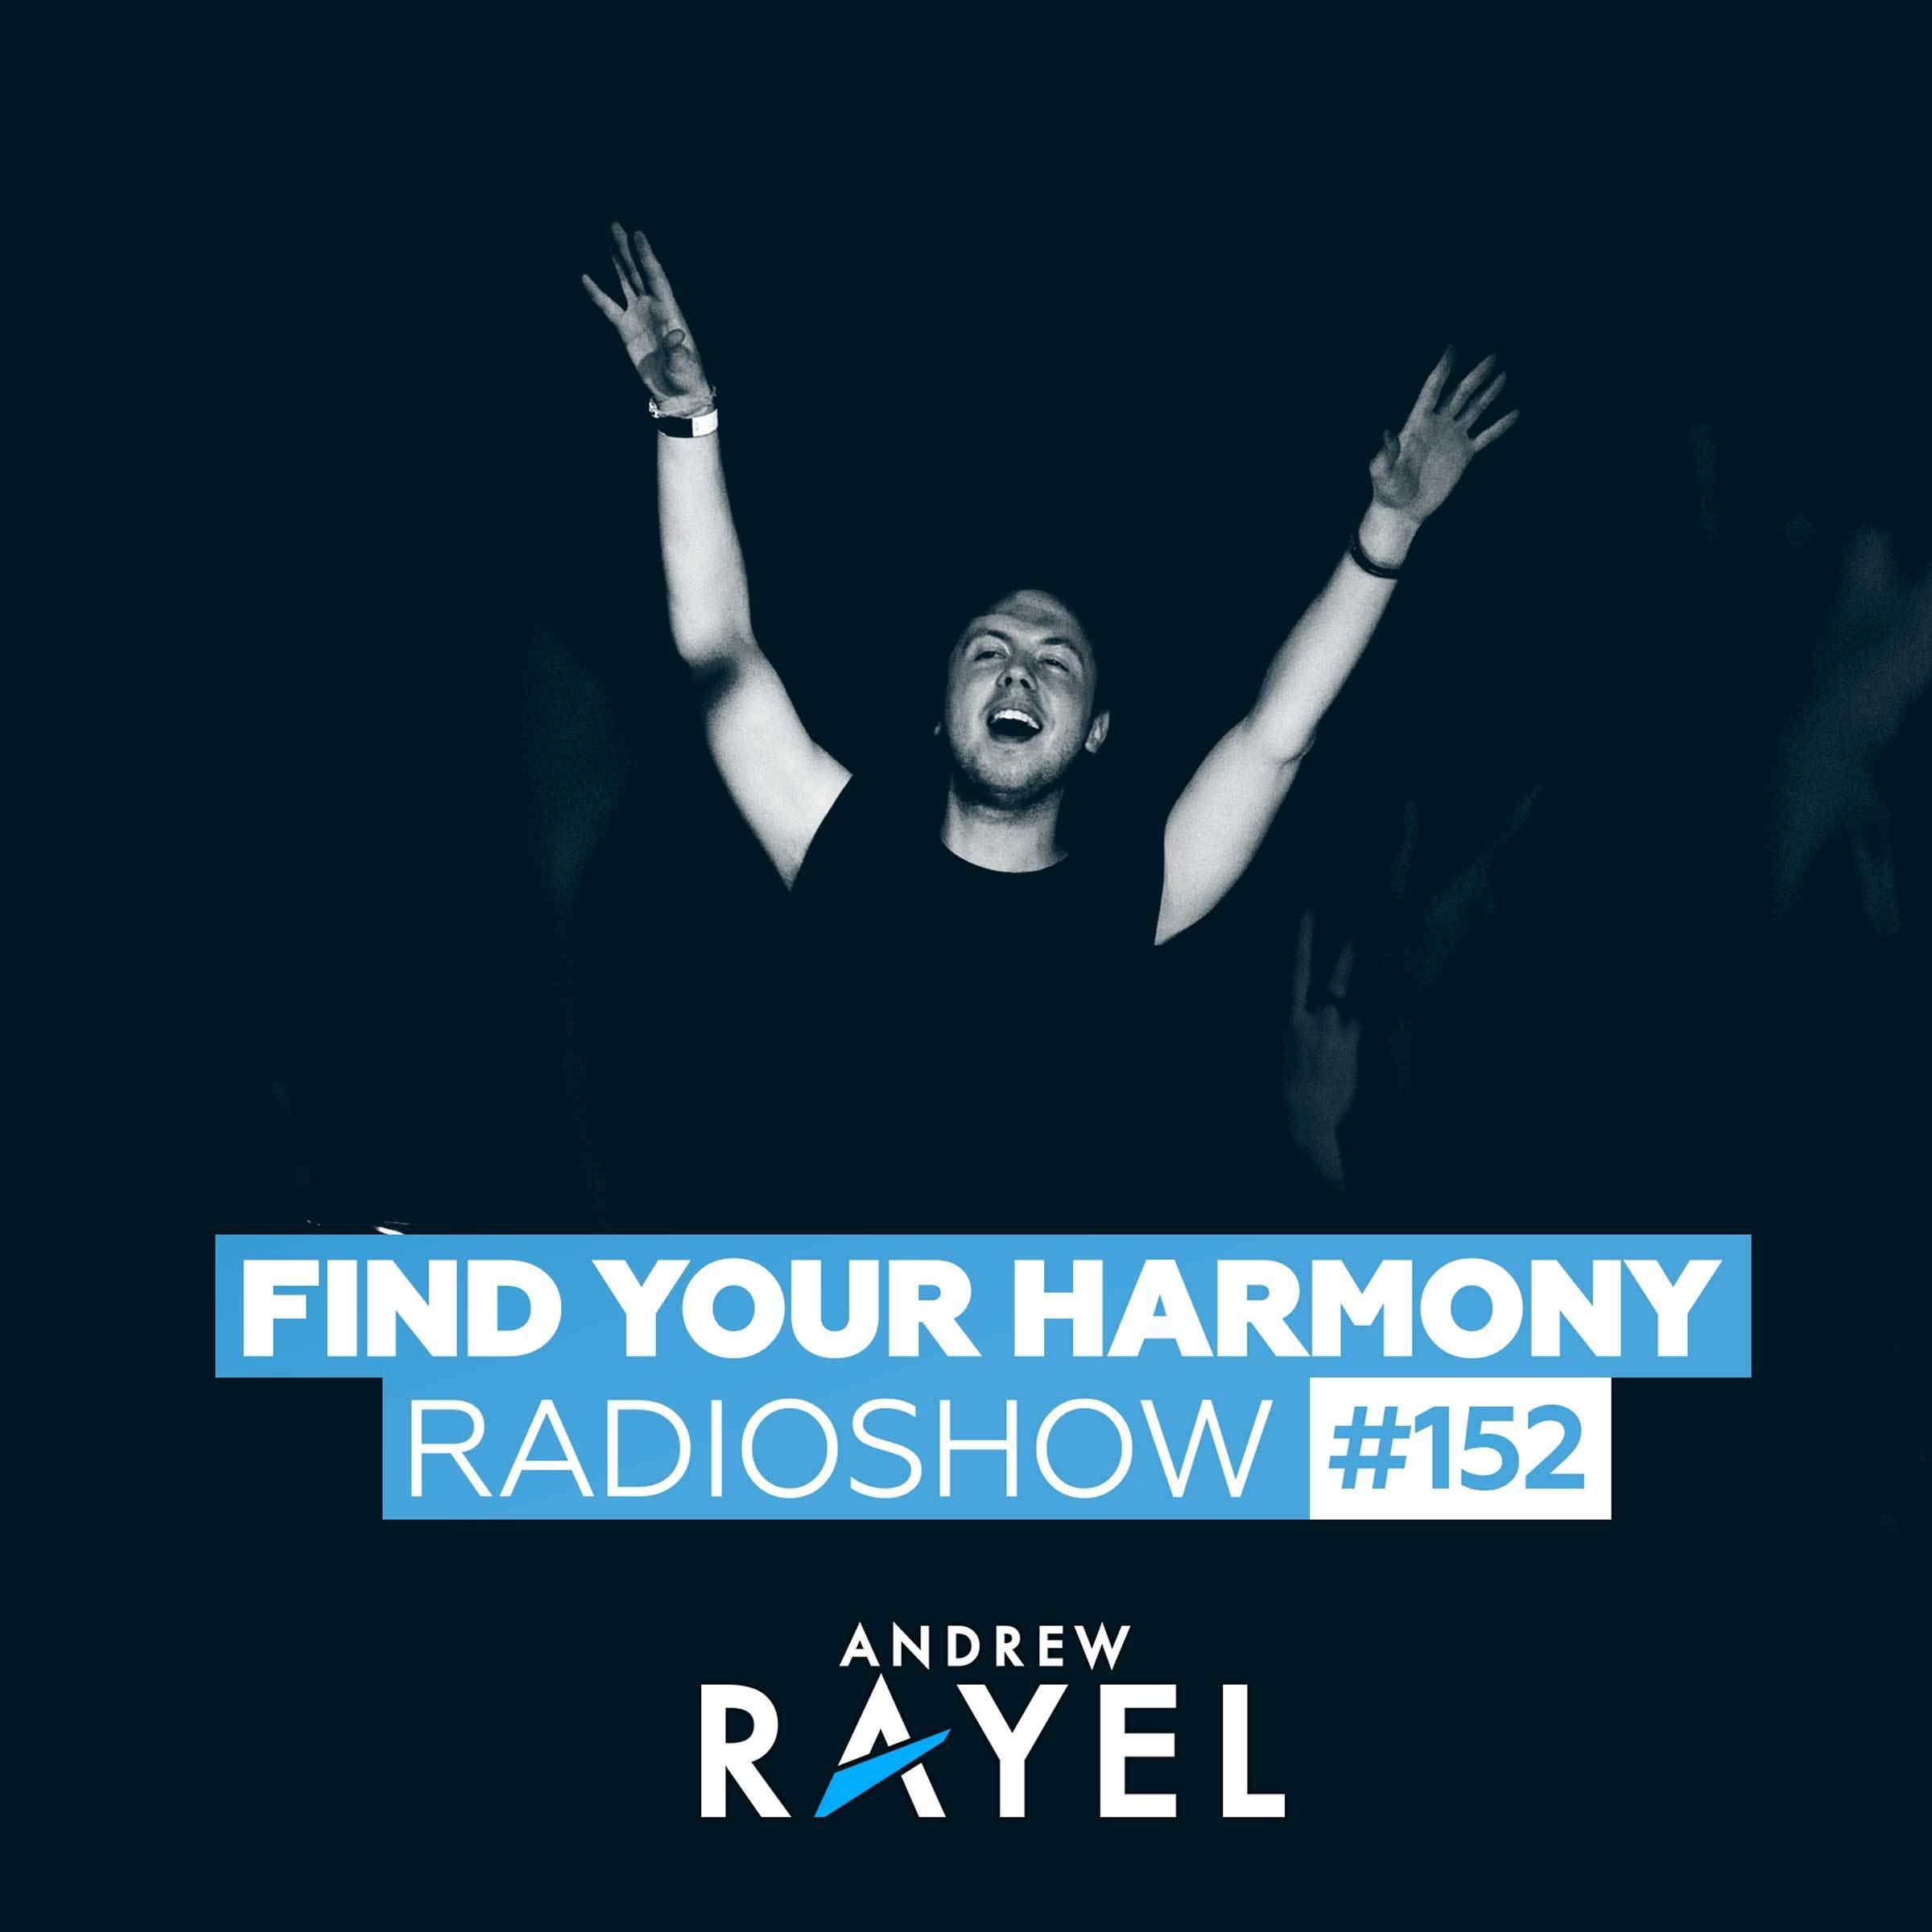 Find Your Harmony Radioshow #152专辑